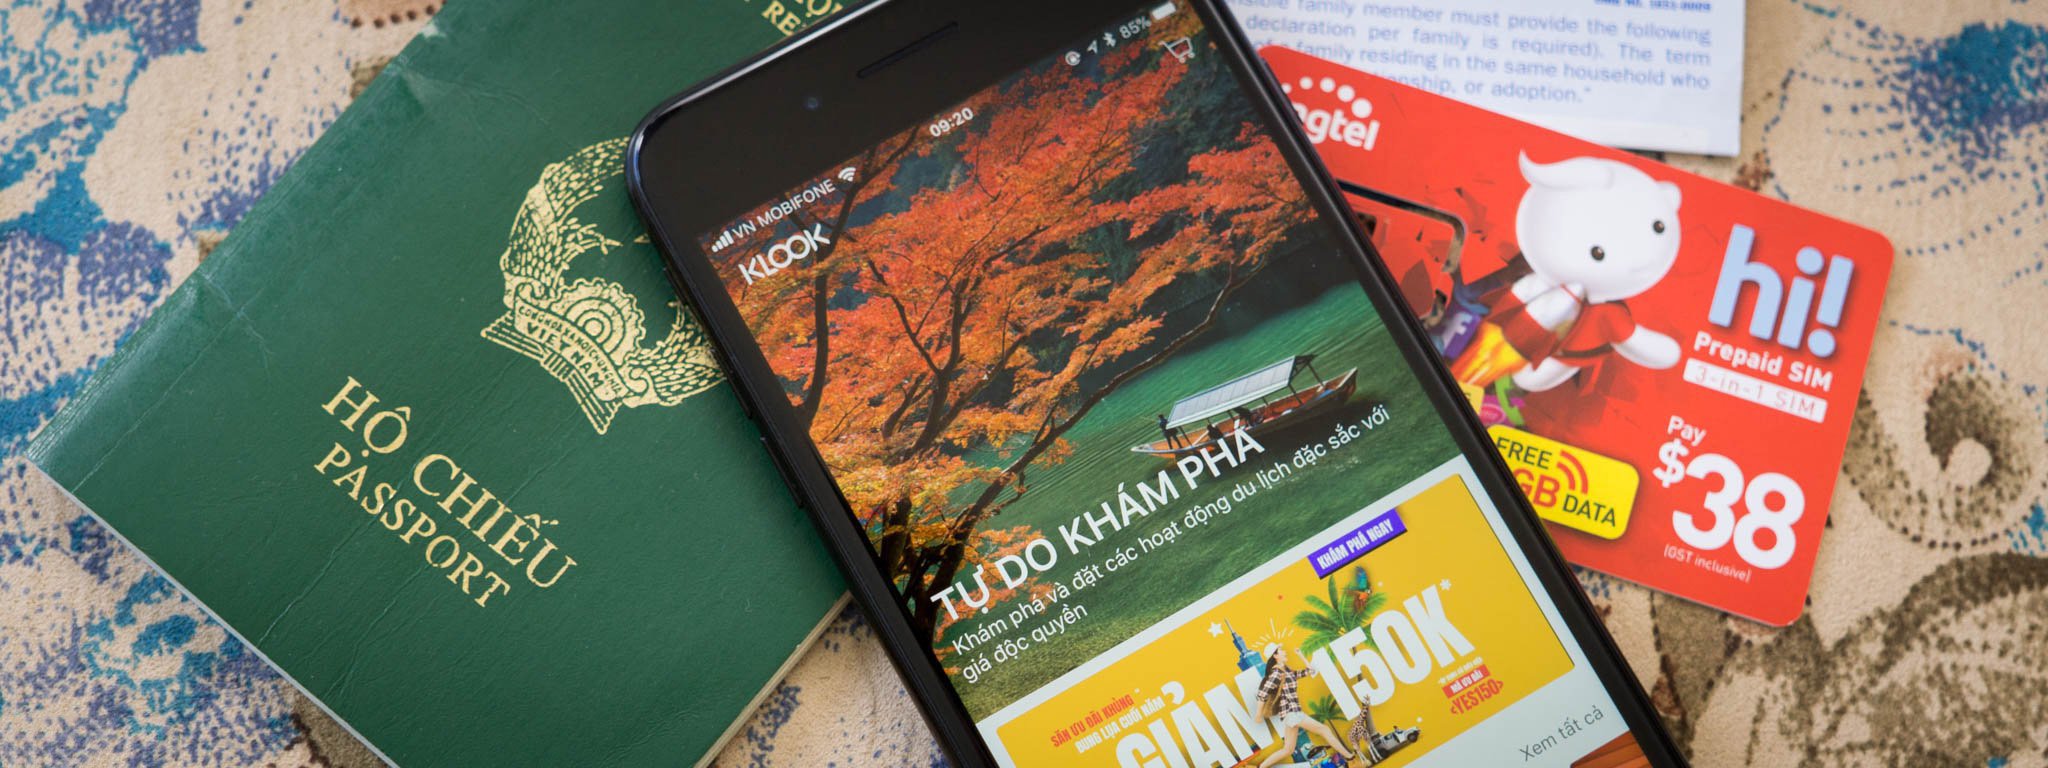 Các app du lịch có thể bạn chưa biết: mua sẵn SIM, Wi-Fi, đặt khách sạn giá rẻ, mua sẵn vé tham quan [HOT]